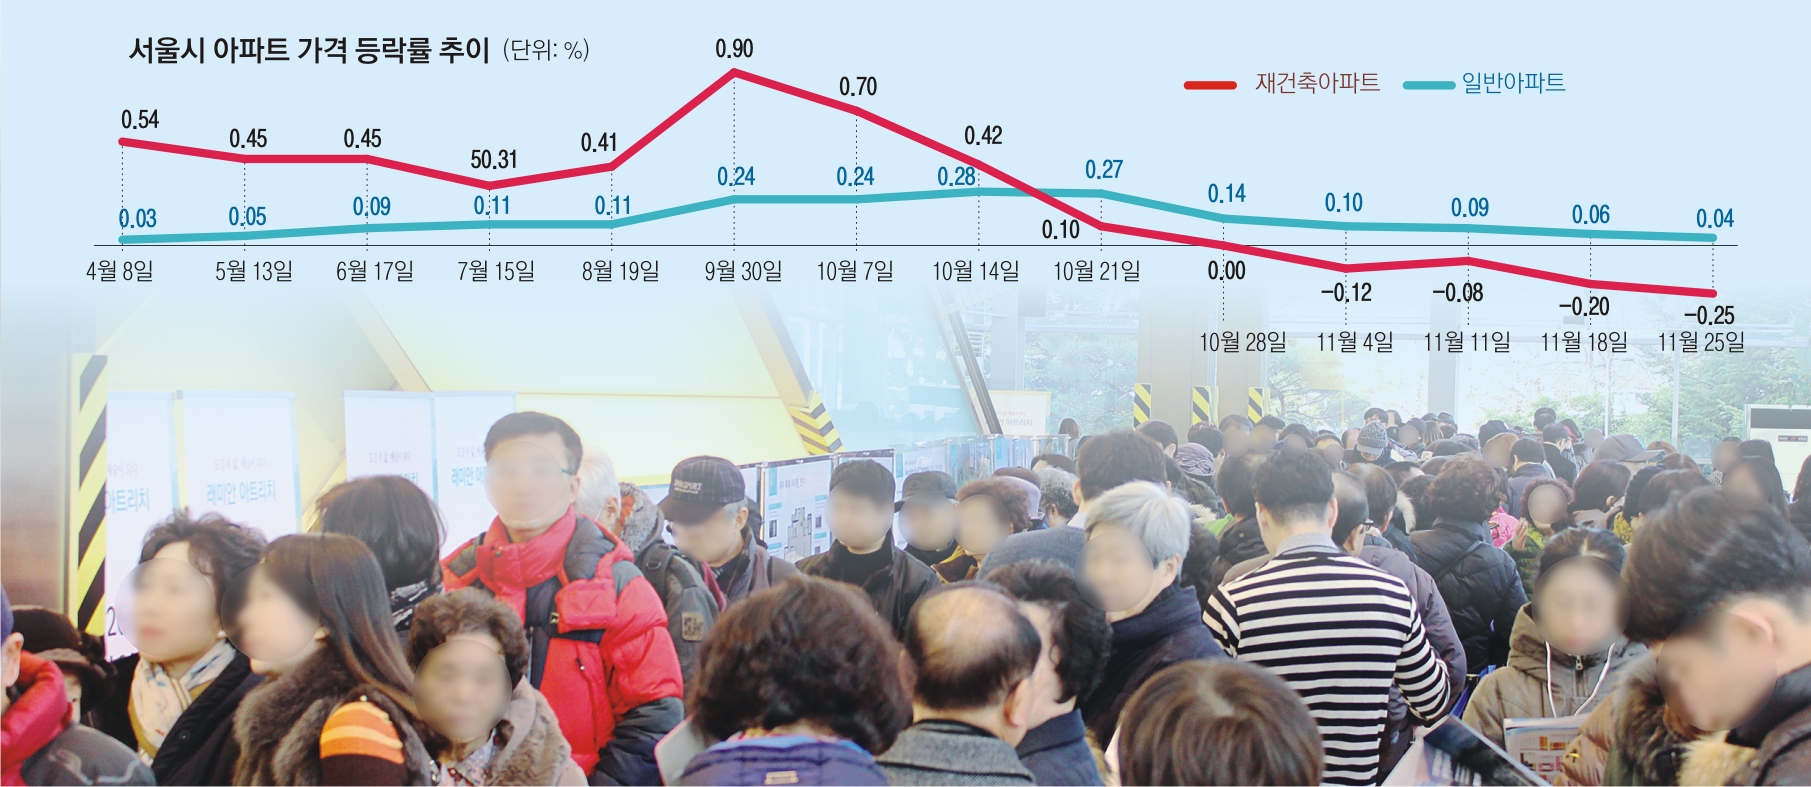 25일 서울 종로구 운니동 래미안갤러리에 문을 연 ‘래미안 아트리치’ 모델하우스가 방문객들로 붐비고 있다. 삼성물산 제공